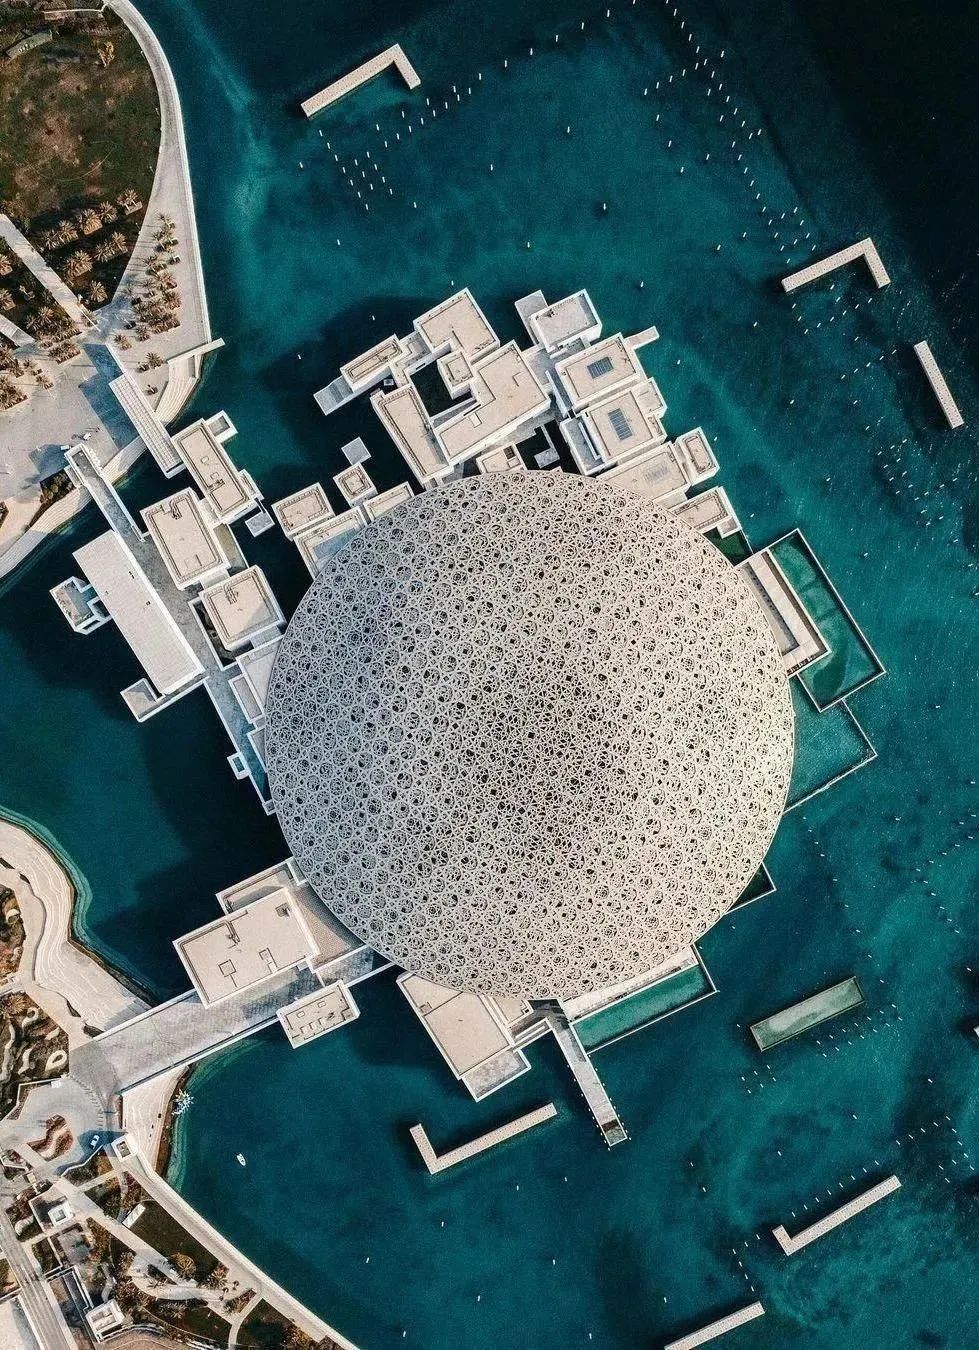 卡塔尔游学—来一场“波斯湾明珠”的文化之旅